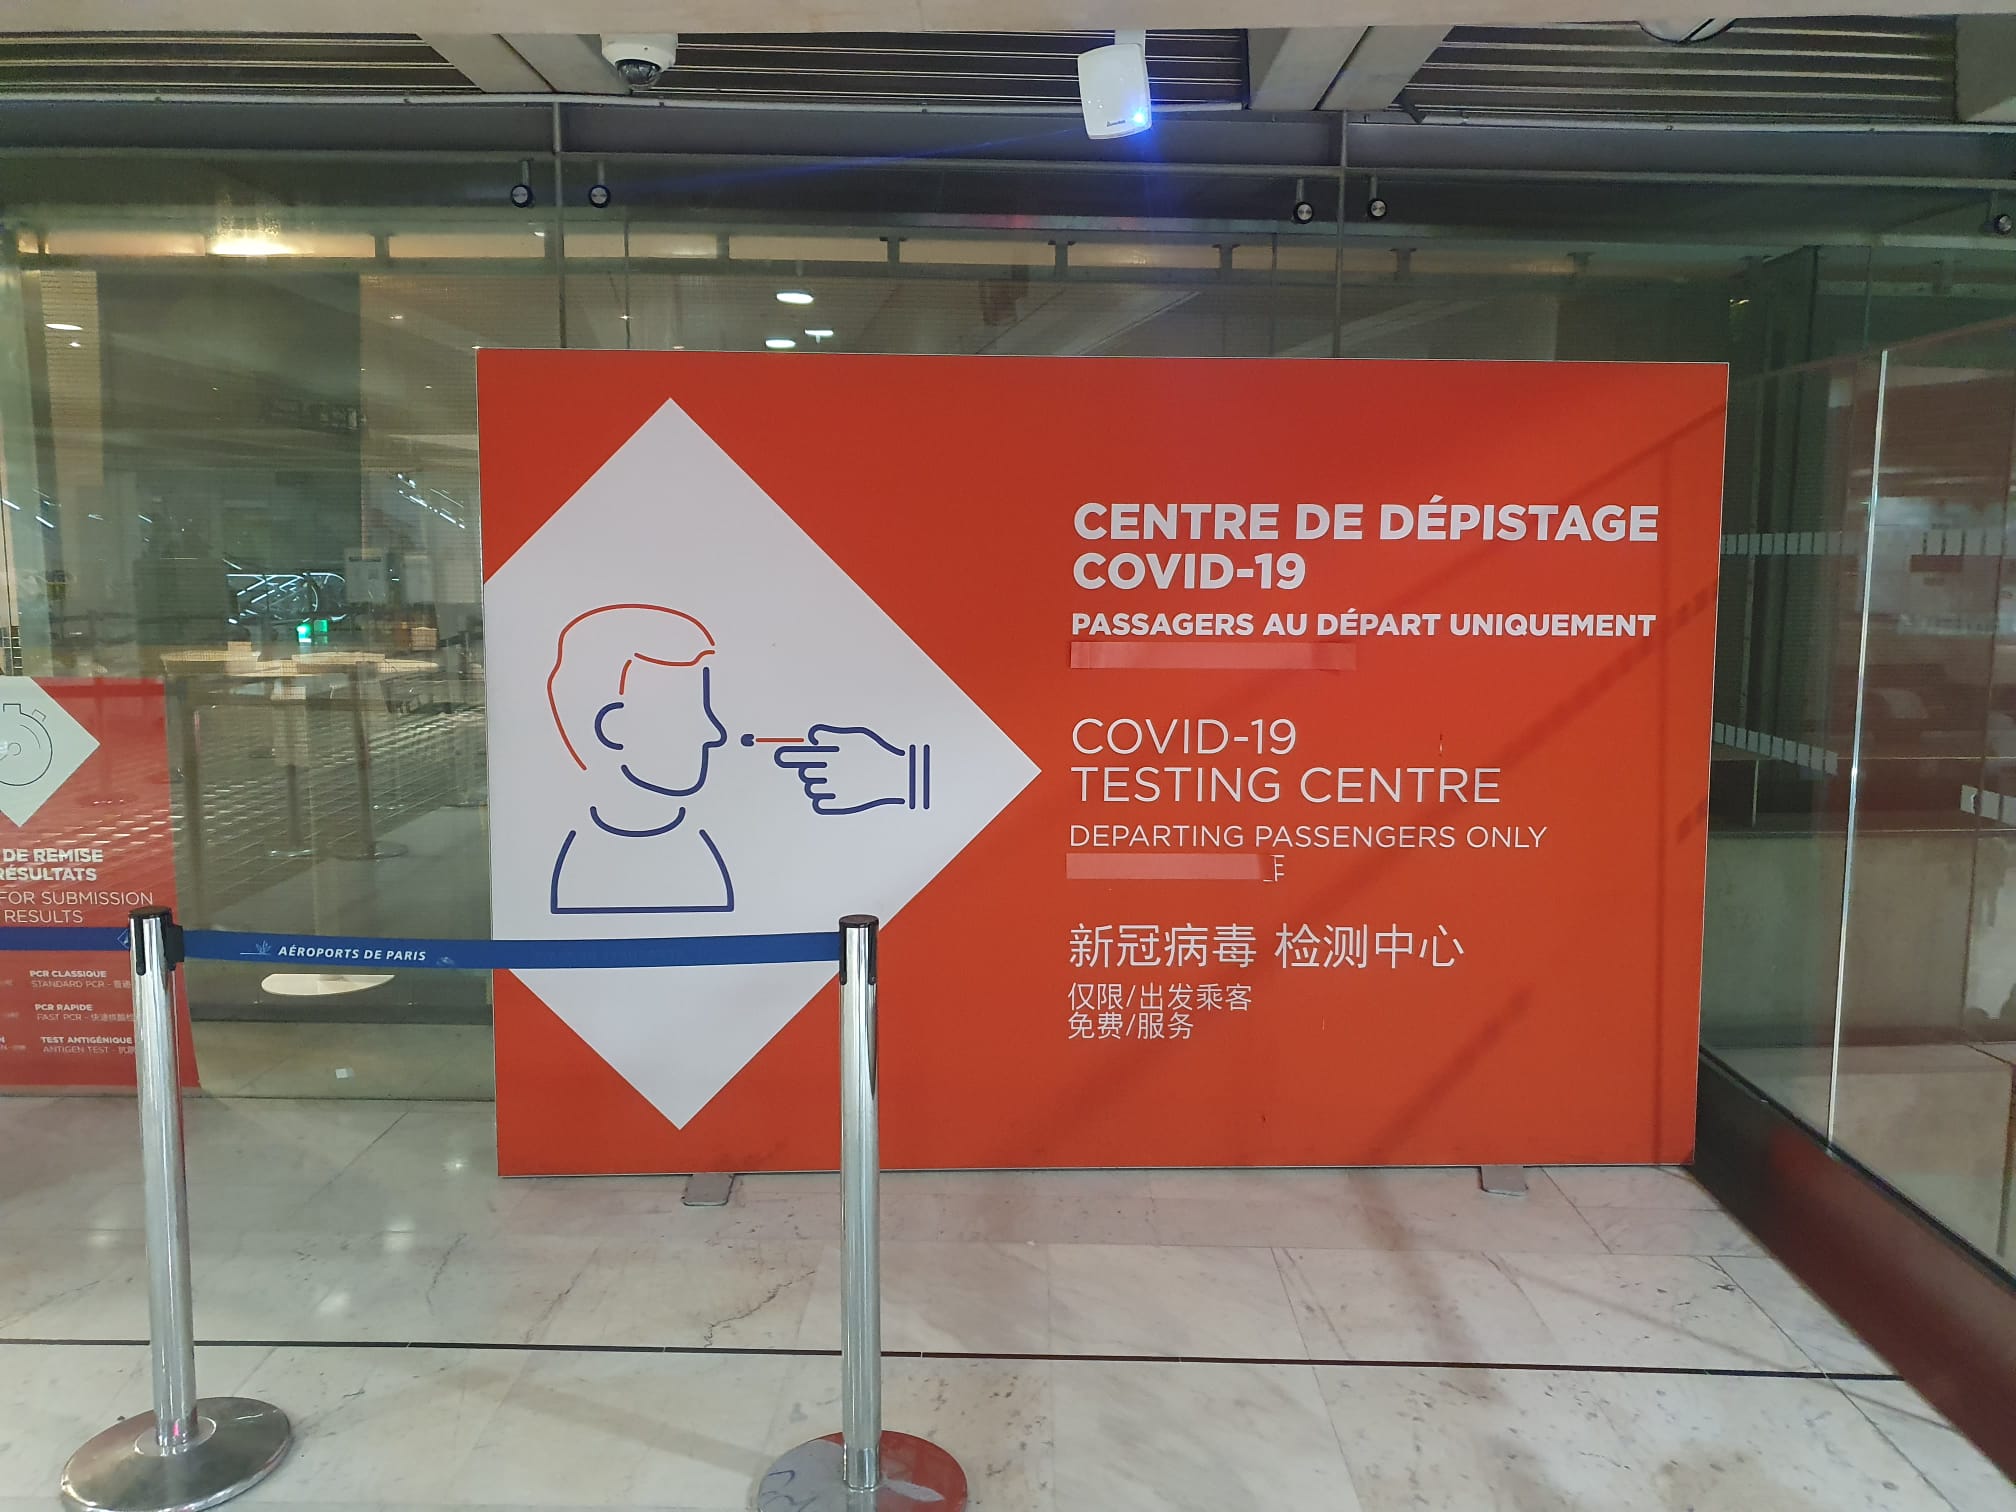 Un stand de dépistage Covid a été installé à l'aéroport Roissy, ce jeudi 12 décembre, en direction des passagers en provenance de Chine, pays où la pandémie de Covid-19 sévit encore. LP/Nicolas Berrod